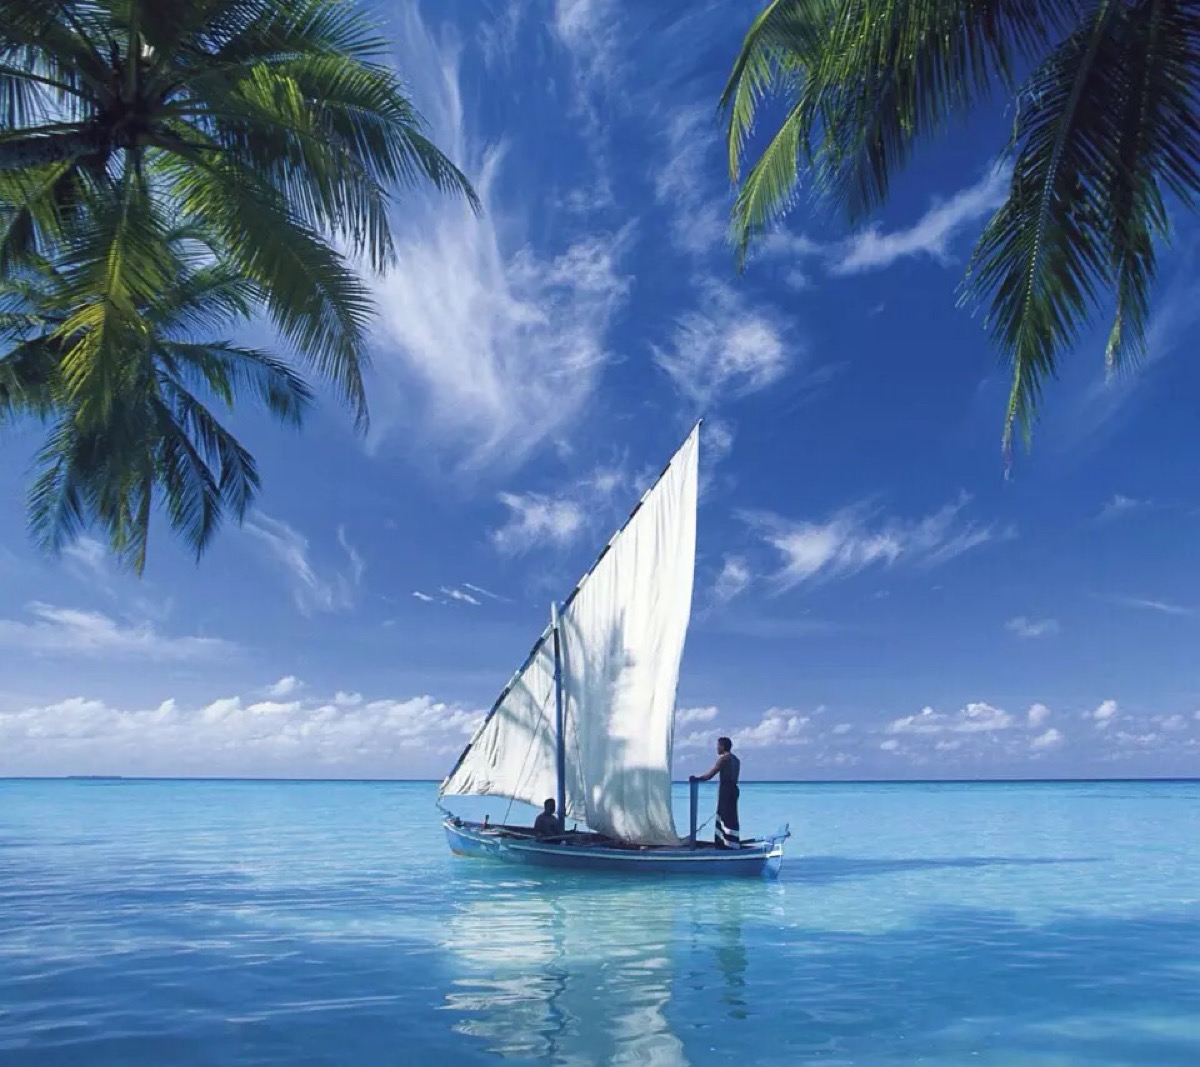 船神马的都如此醉人 天那么蓝,水那么清,阳光静好,带着恬静的心和满满